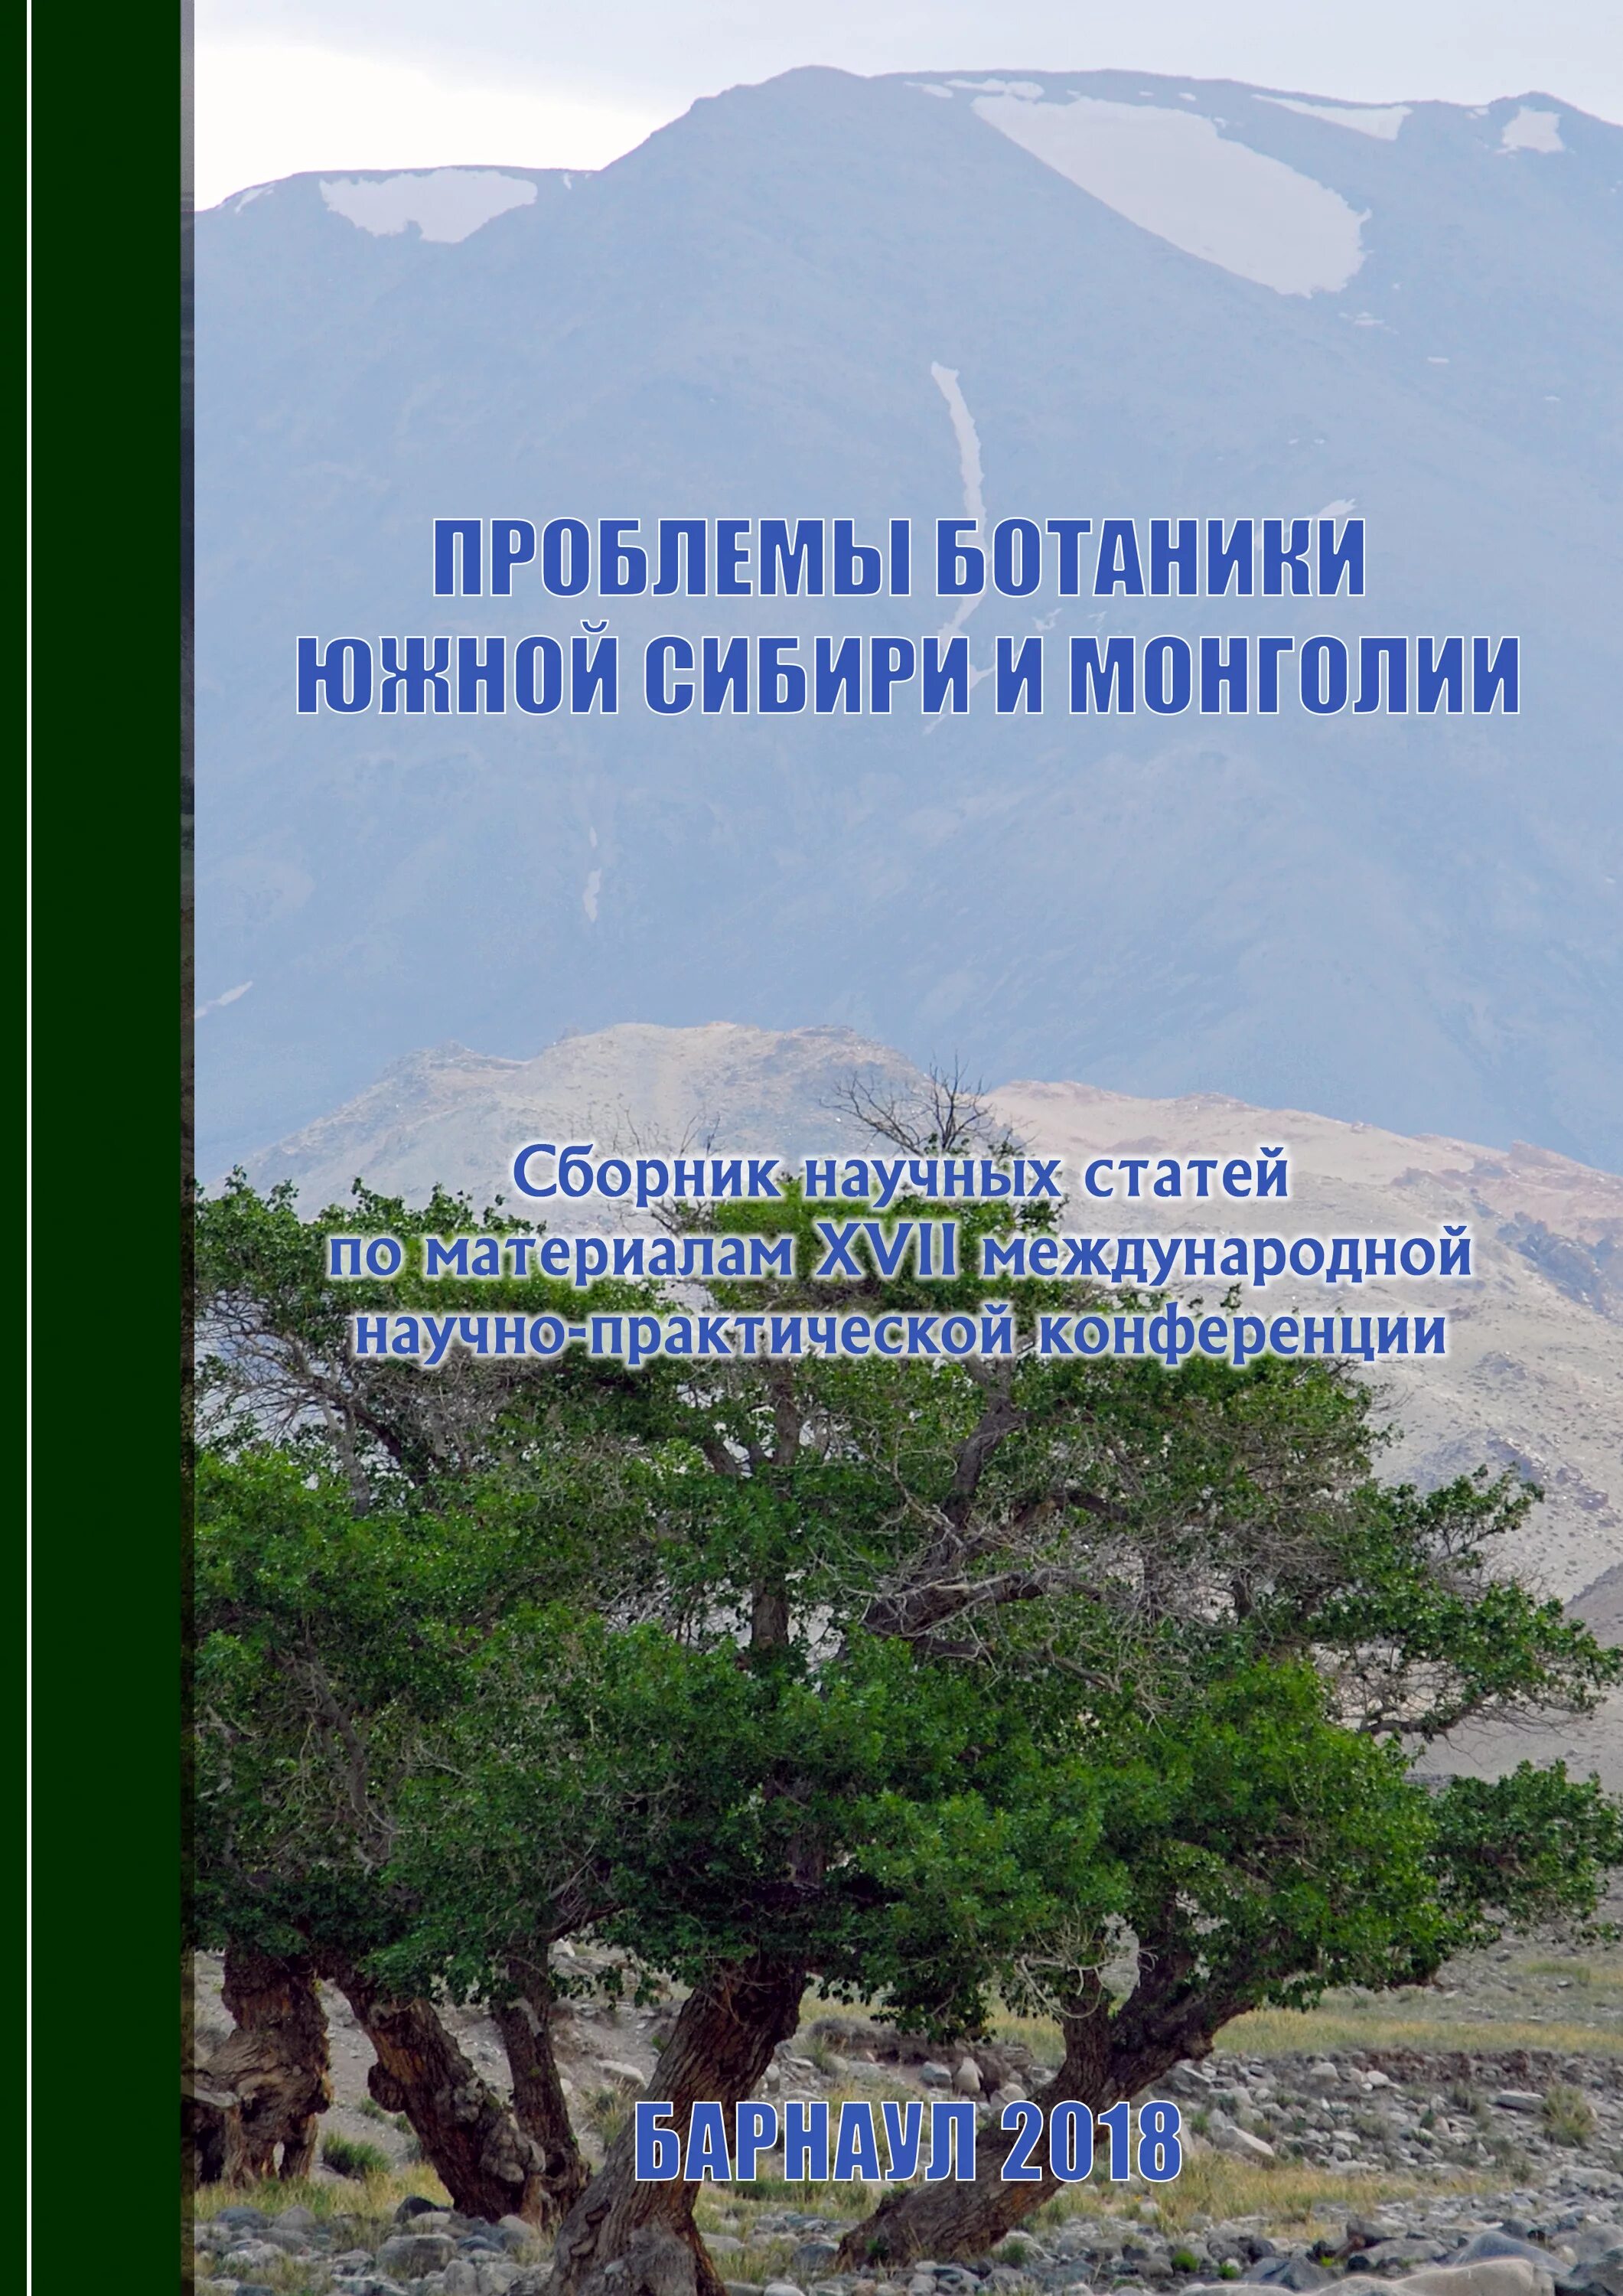 Проблемы ботаники. Проблемы в ботанике. Проблемы Монголии. Проблемы ботаники Южной Сибири и Монголии 2022 программ.